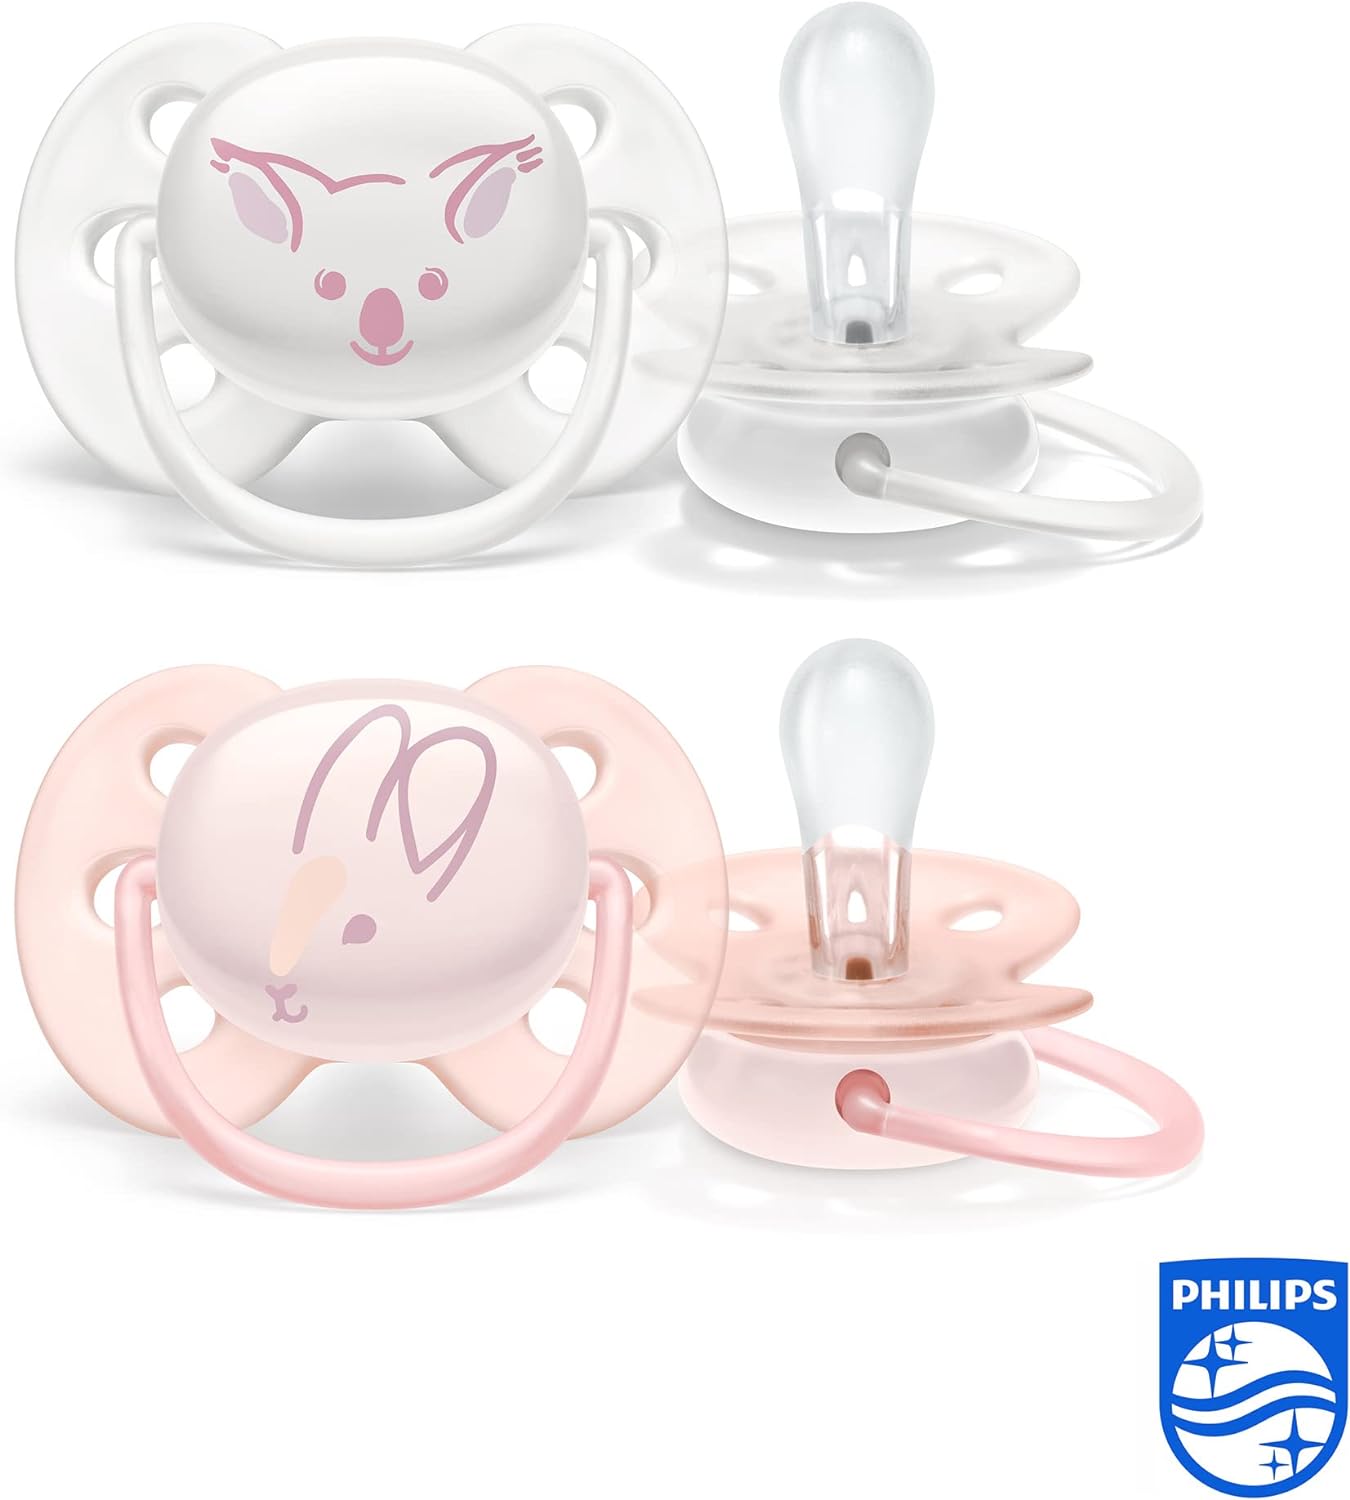 Philips Avent Lot de 2 sucettes ultra-douces sans BPA pour les bébés âgés de 0 à 6 mois,